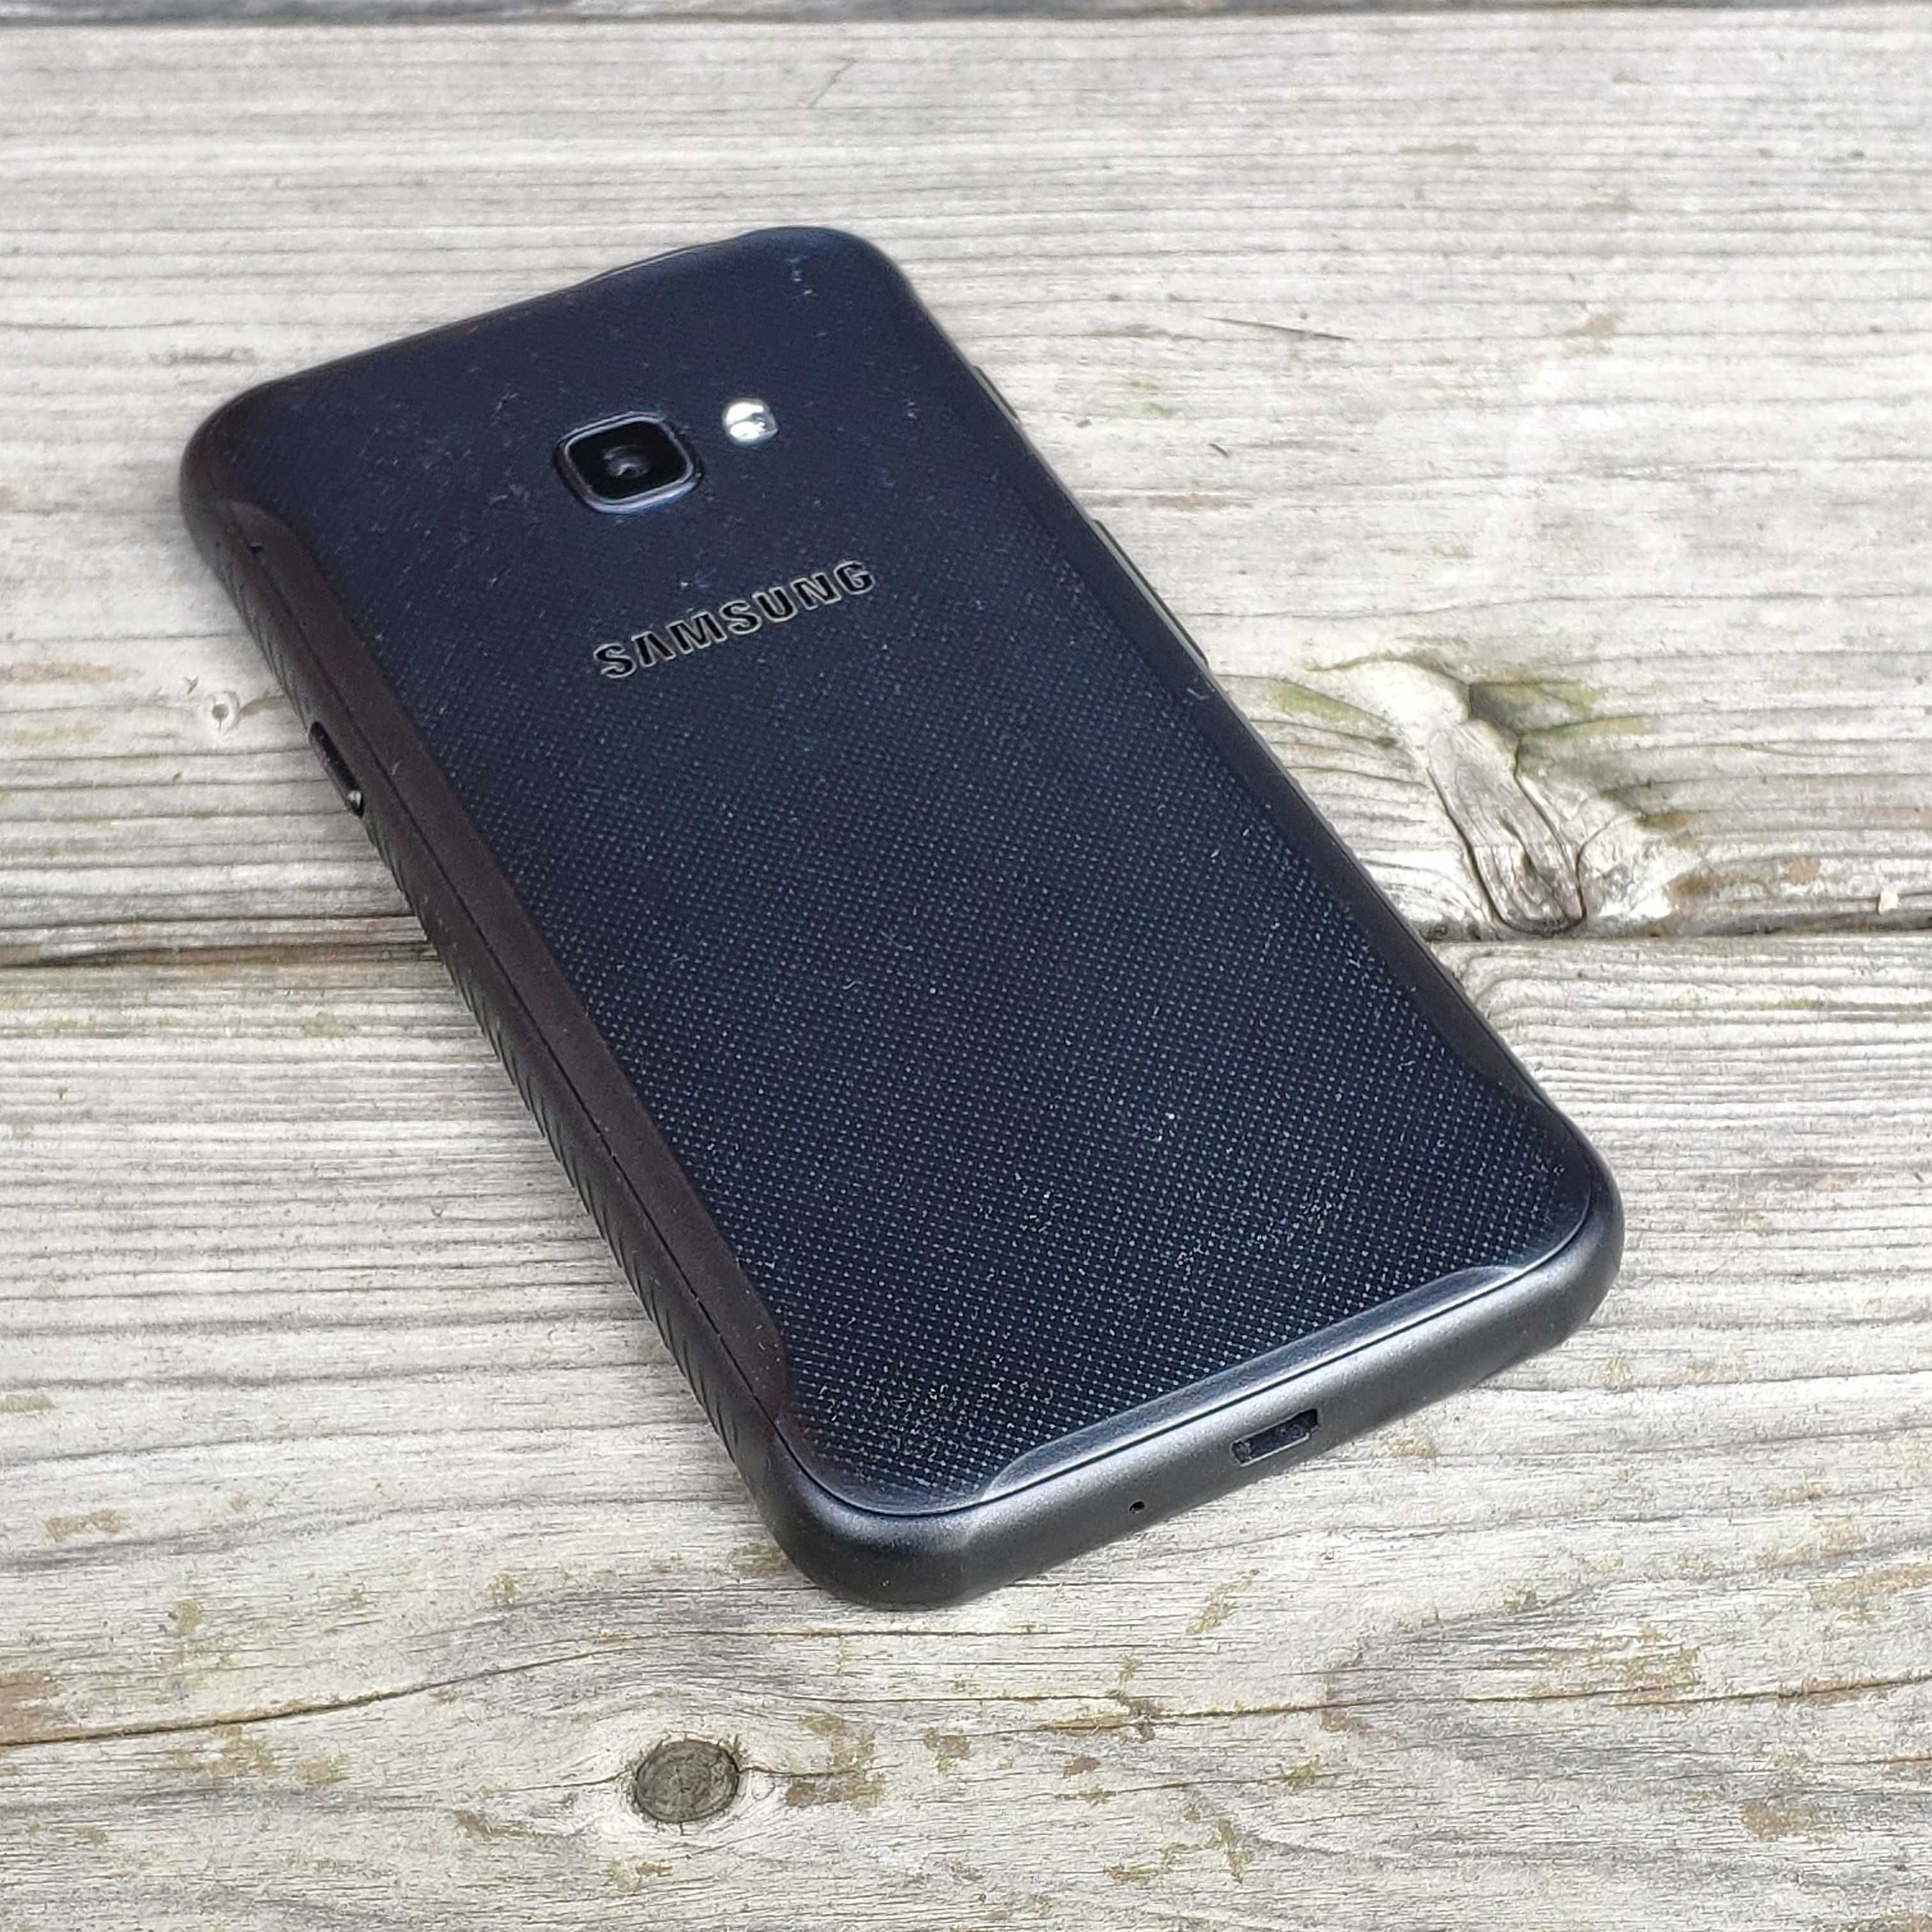 Smartfon Samsung xCover 4 "pancerny" z ładowarką, w pełni sprawny!